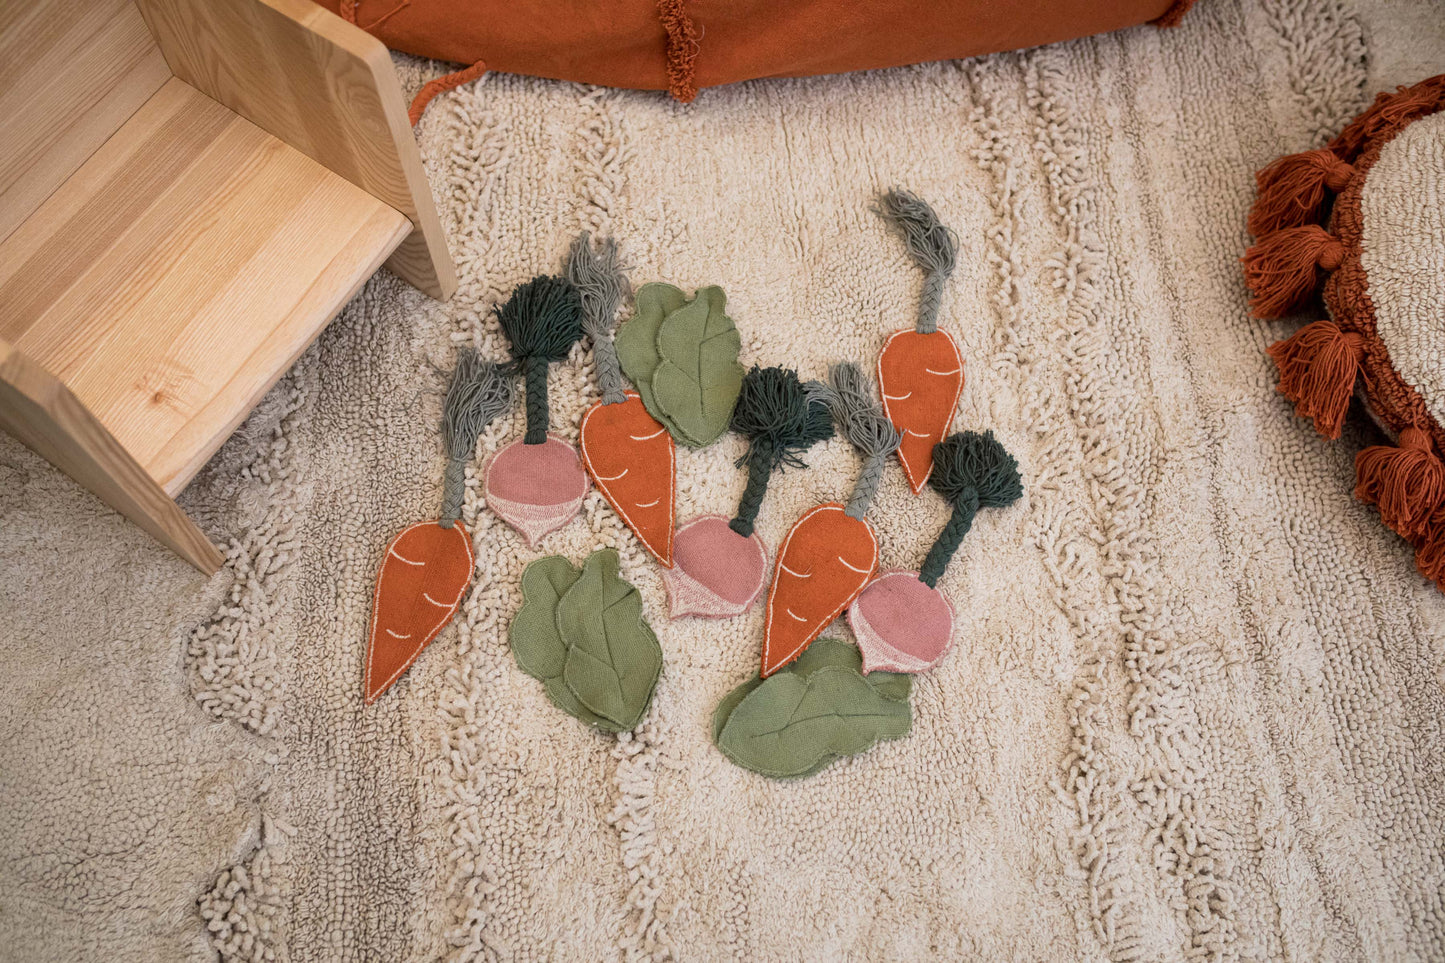 Lorena Canals Washable cotton rug - Veggie Garden - 120x160cm